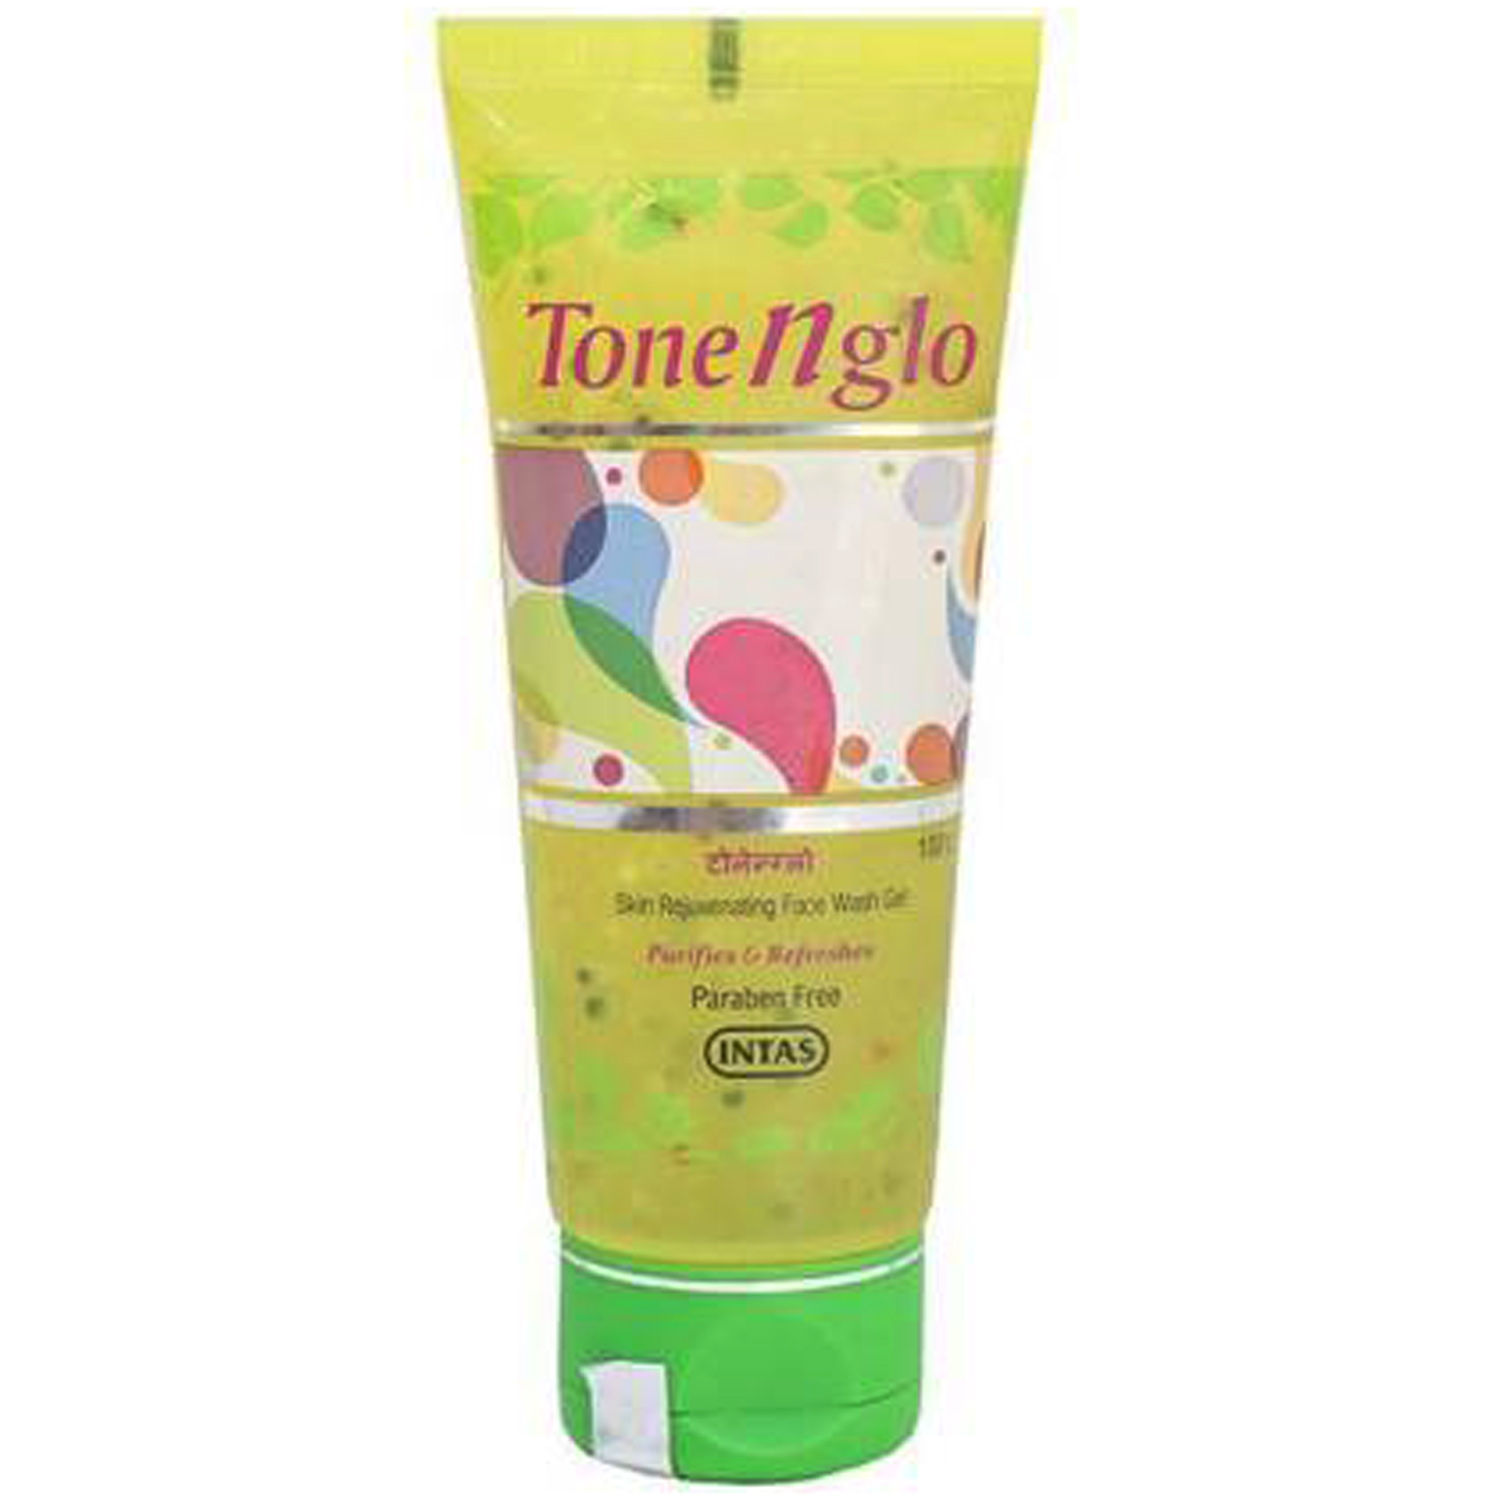 Tone N Glo Skin Rejuvenating Face Wash Gel, 50 gm, Pack of 1 